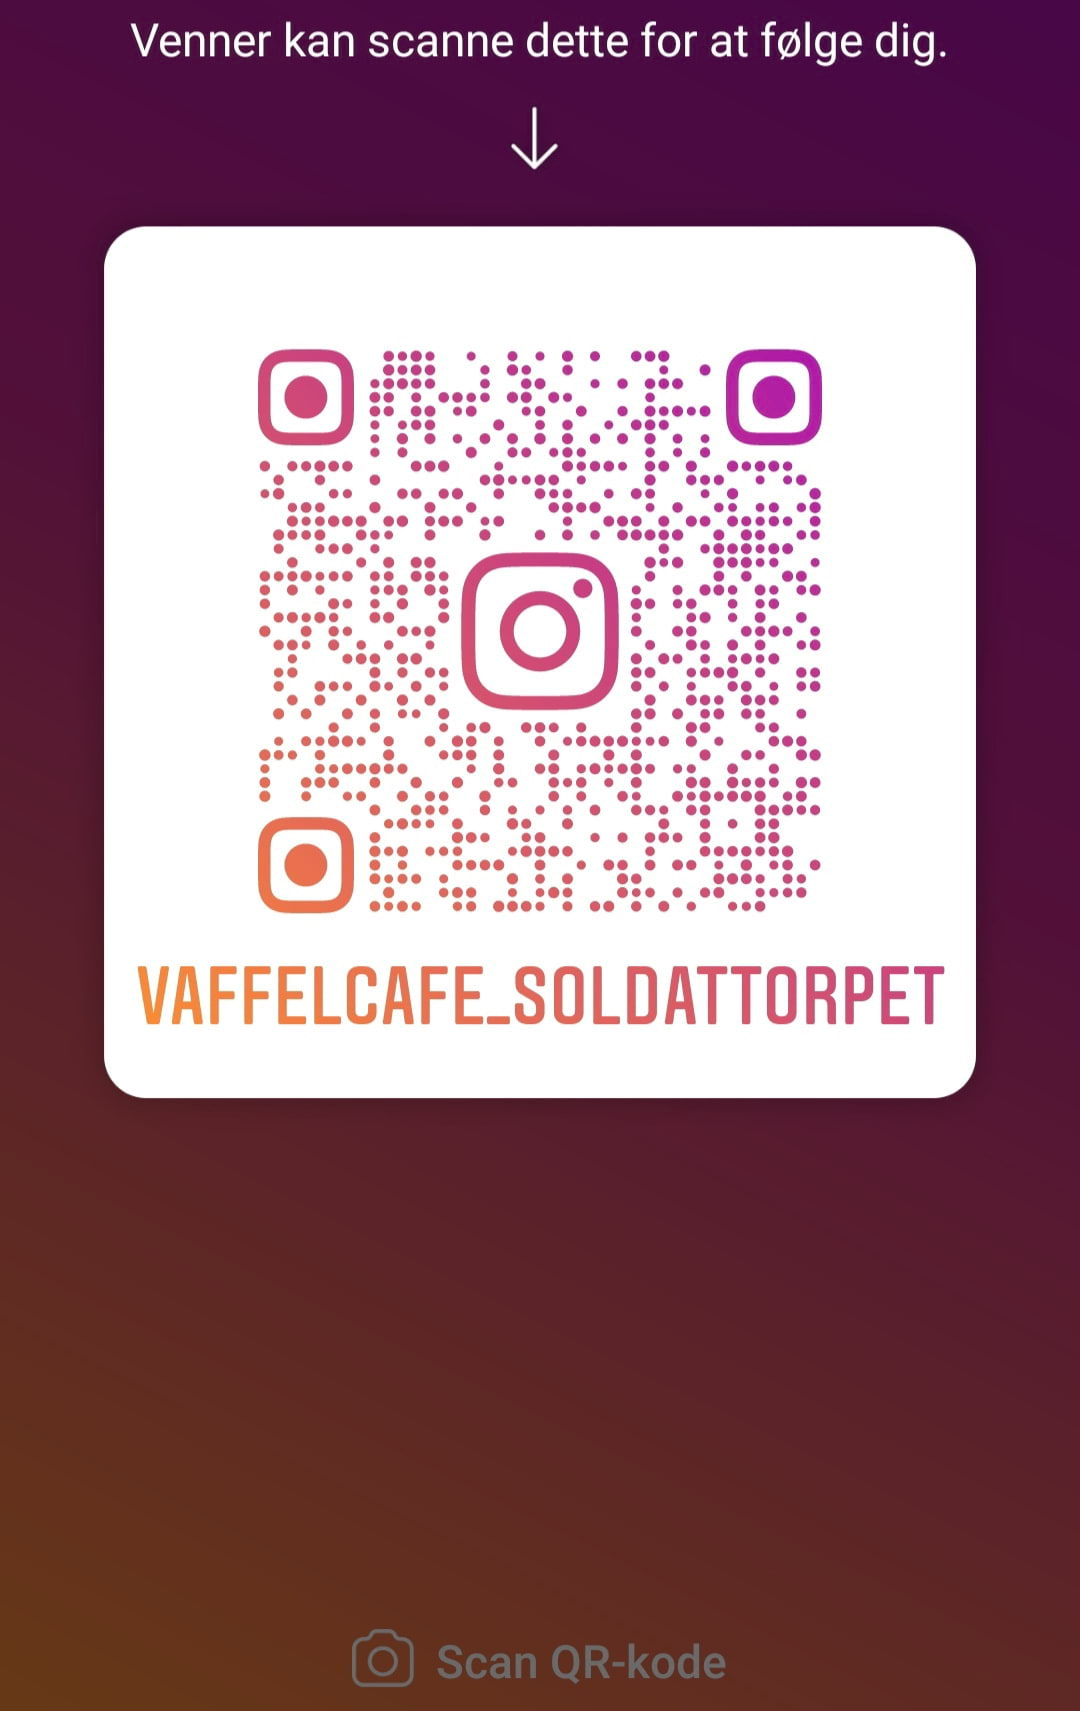 Vaffelcafe_soldattorpet  – Bild från Våffelcafé Soldattorpet av Jack V. (2020-11-13)